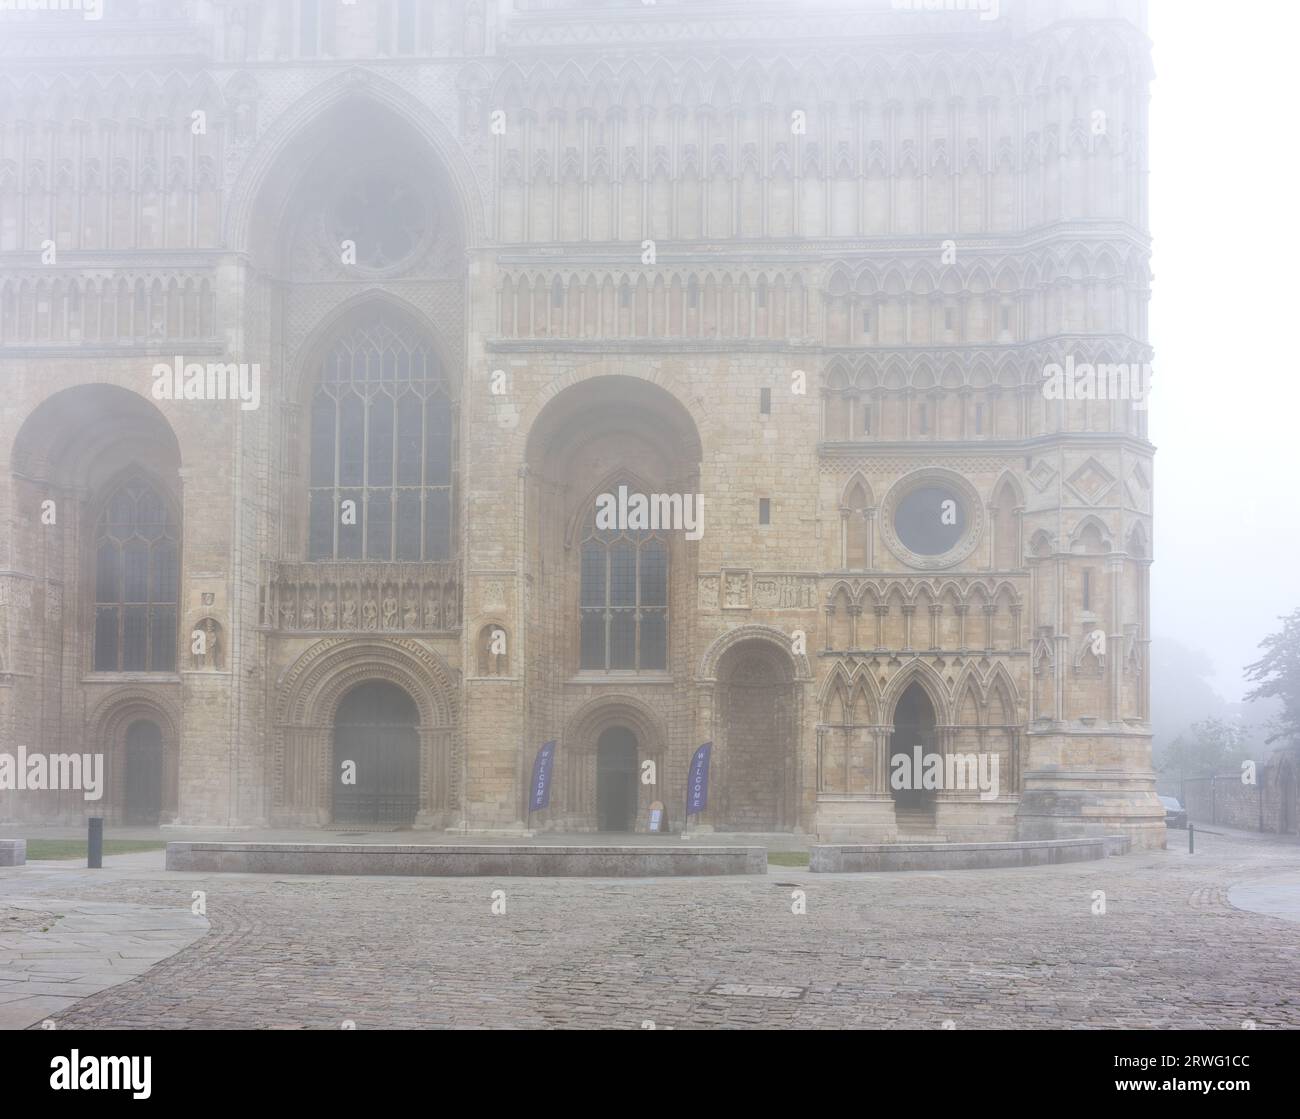 West End e ingresso principale alla cattedrale medievale costruita dai normanni a Lincoln, Inghilterra, in una mattina nebbiosa. Foto Stock